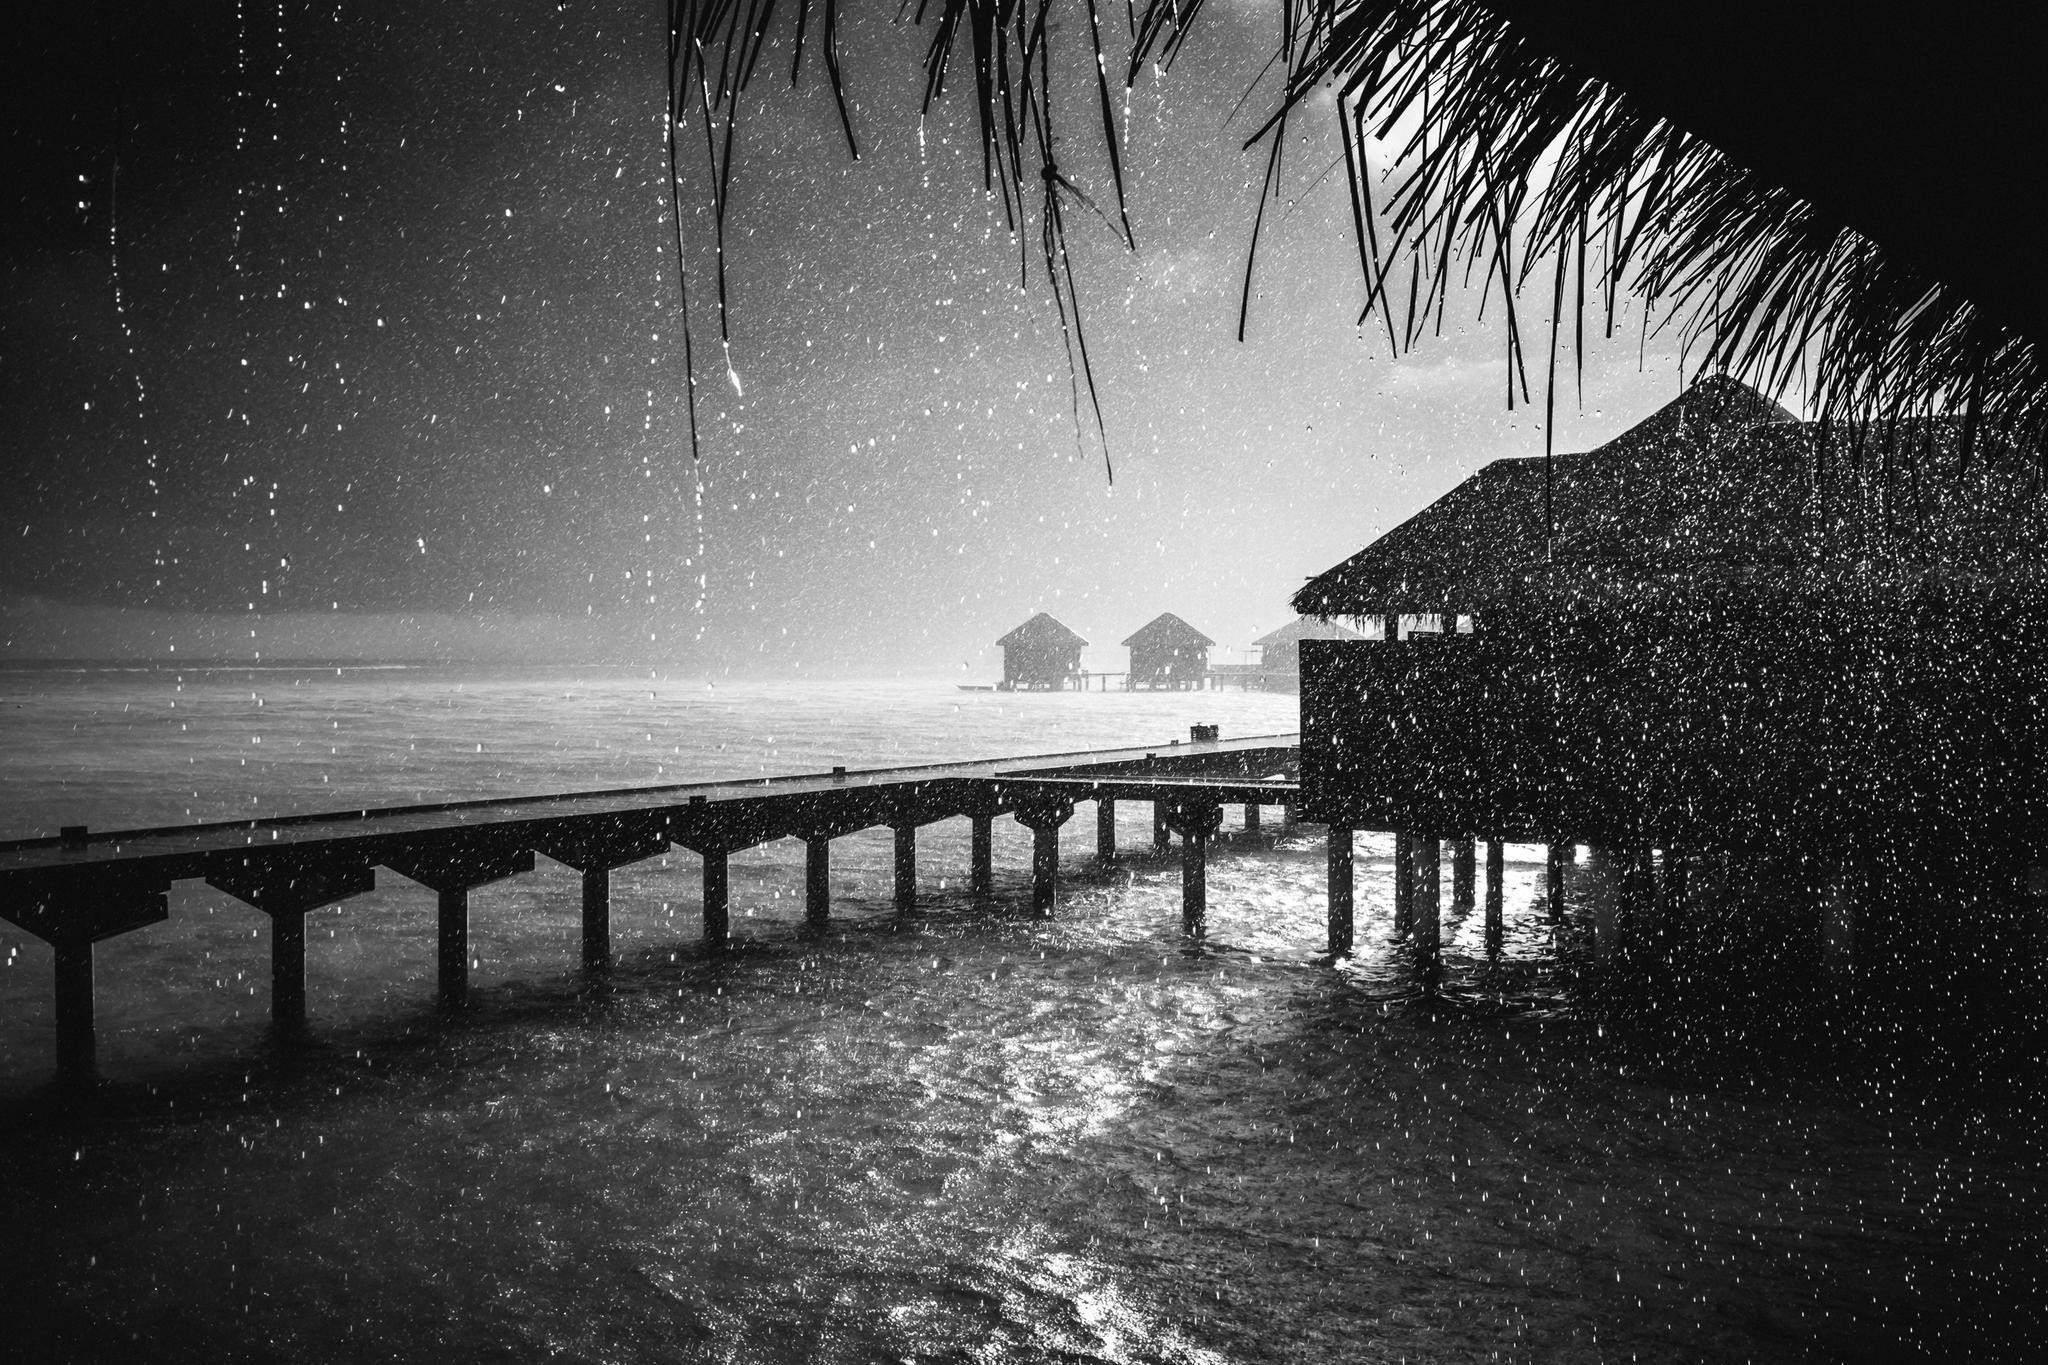 Rain beach. Ночной пляж. Дождь на море. Ночной пейзаж на пляже. Дождливое море.